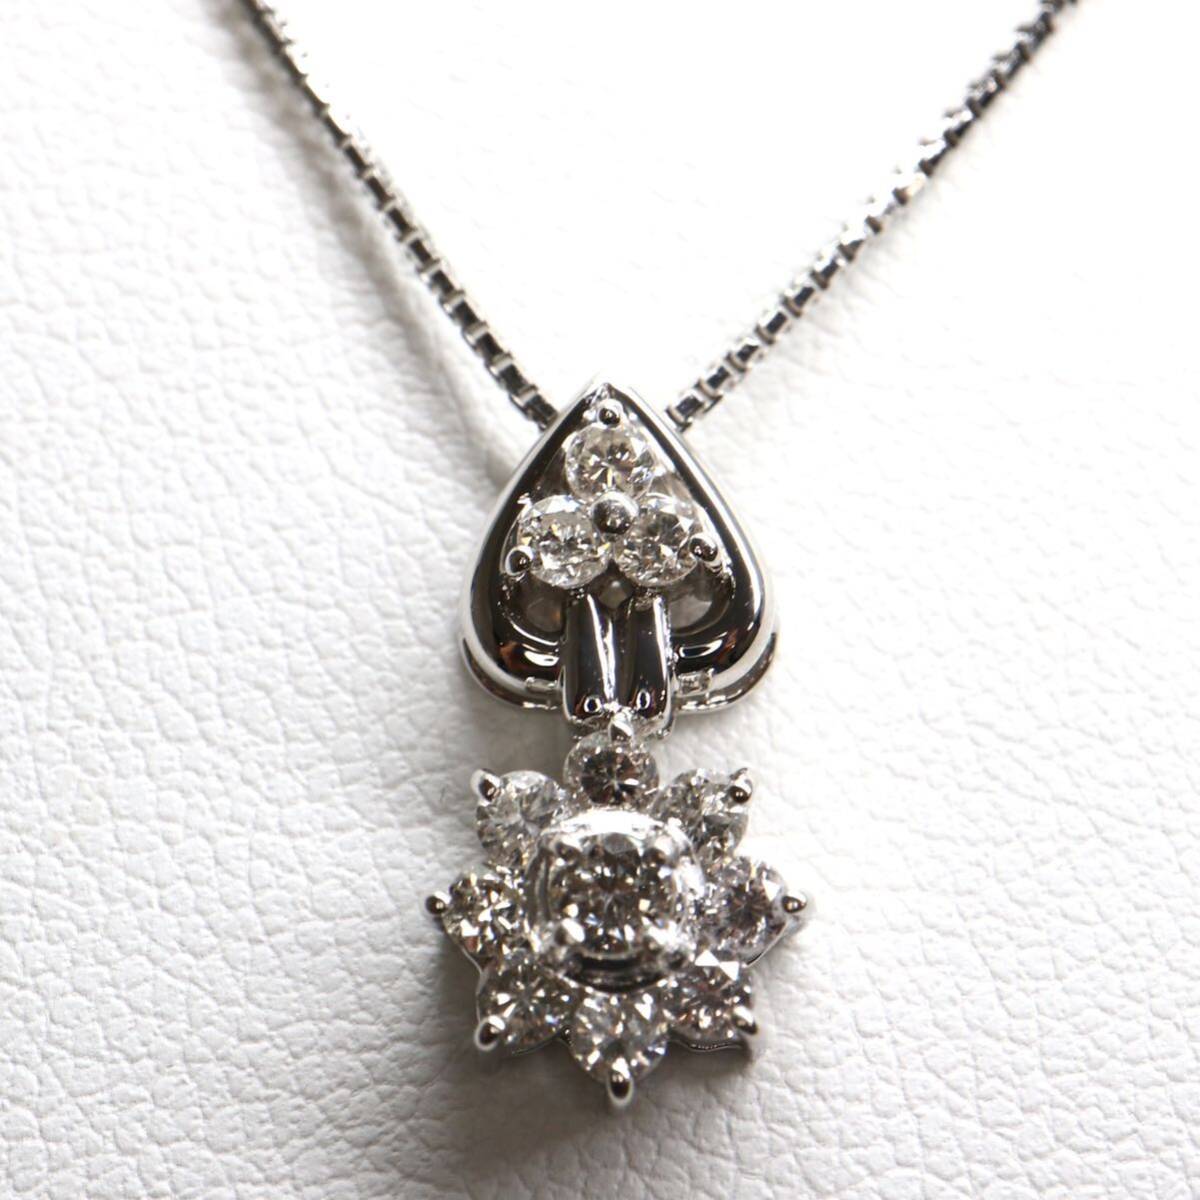 《Pt900/Pt850 天然ダイヤモンドネックレス》A 約5.1g 約39cm 0.50ct necklace diamond jewelry ジュエリー EB6/EB6_画像1